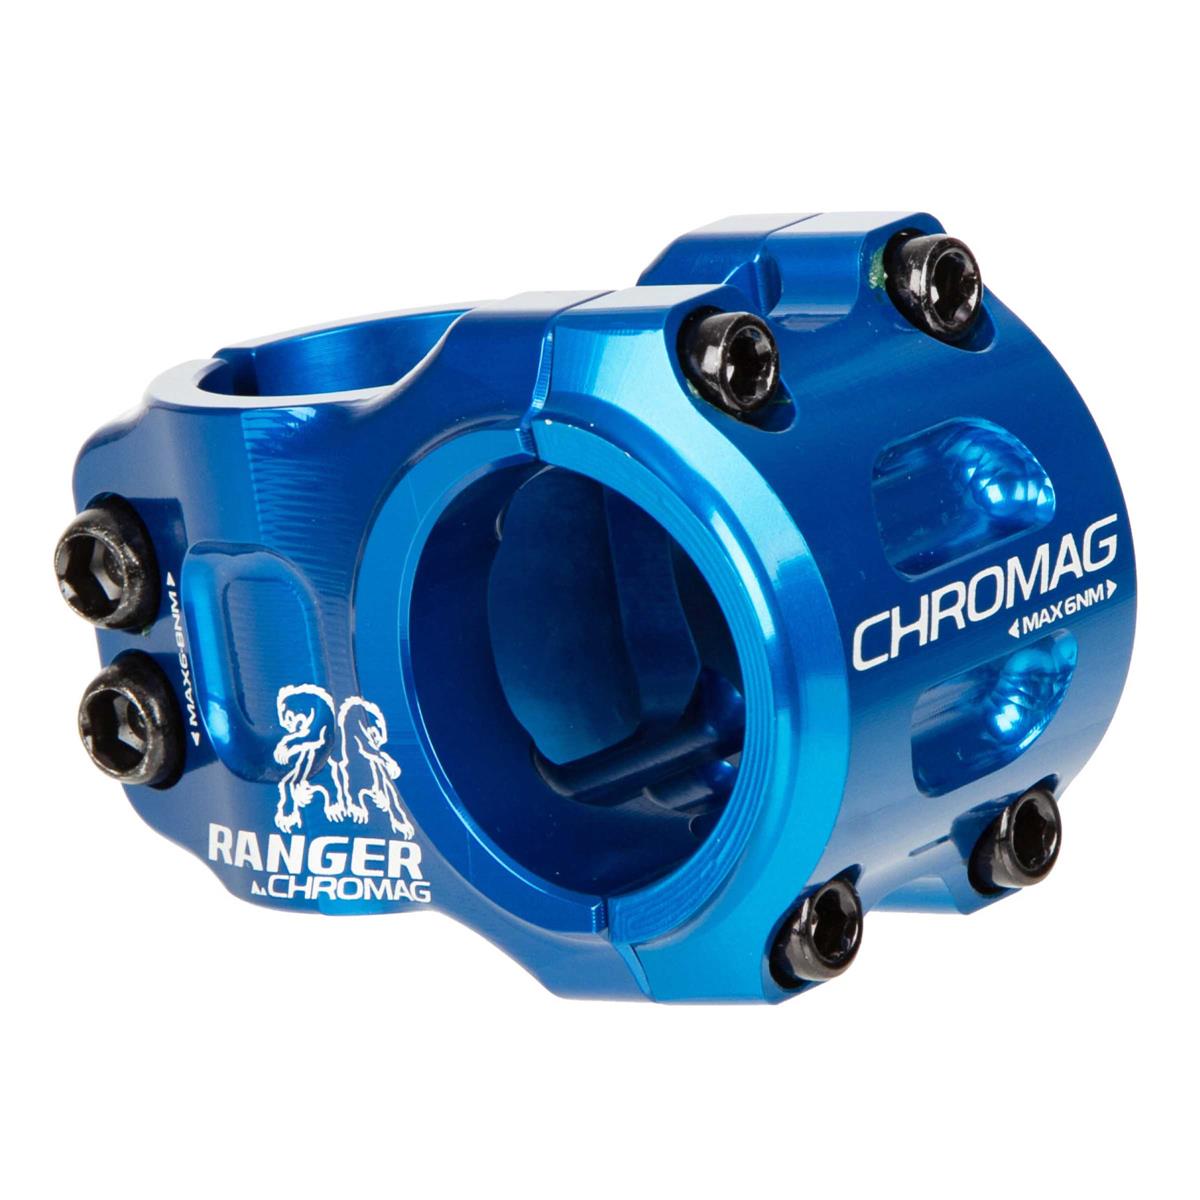 Chromag MTB Stem Ranger V2 31.8 mm, 31 mm Reach, Blue